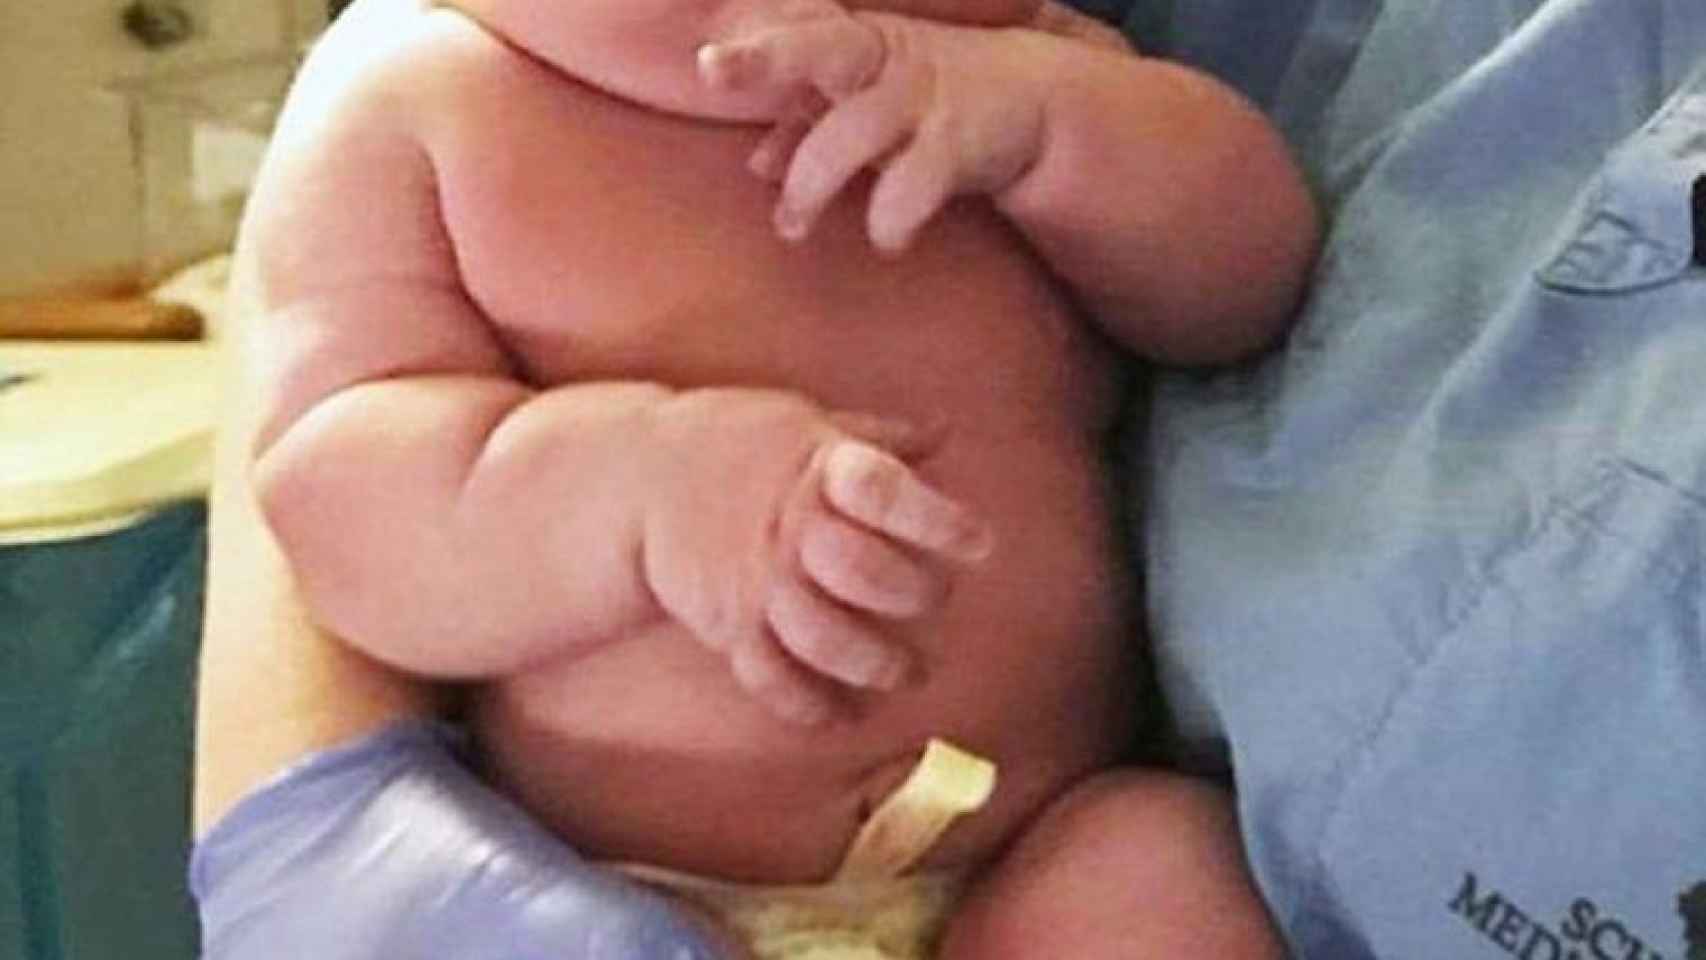 El bebé peso cuatro kilos más del peso estándar